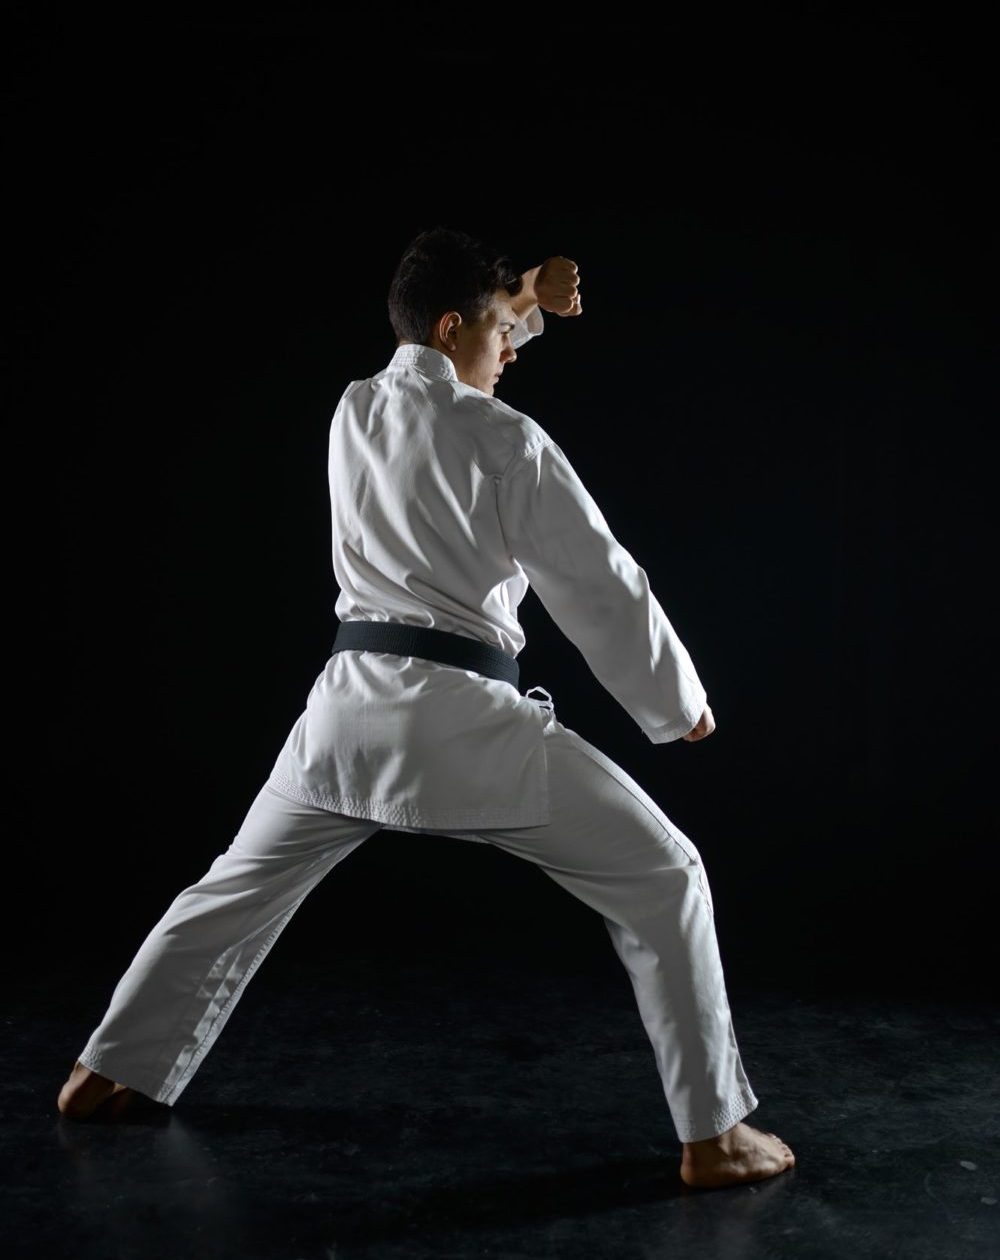 bkc-karate-fighter